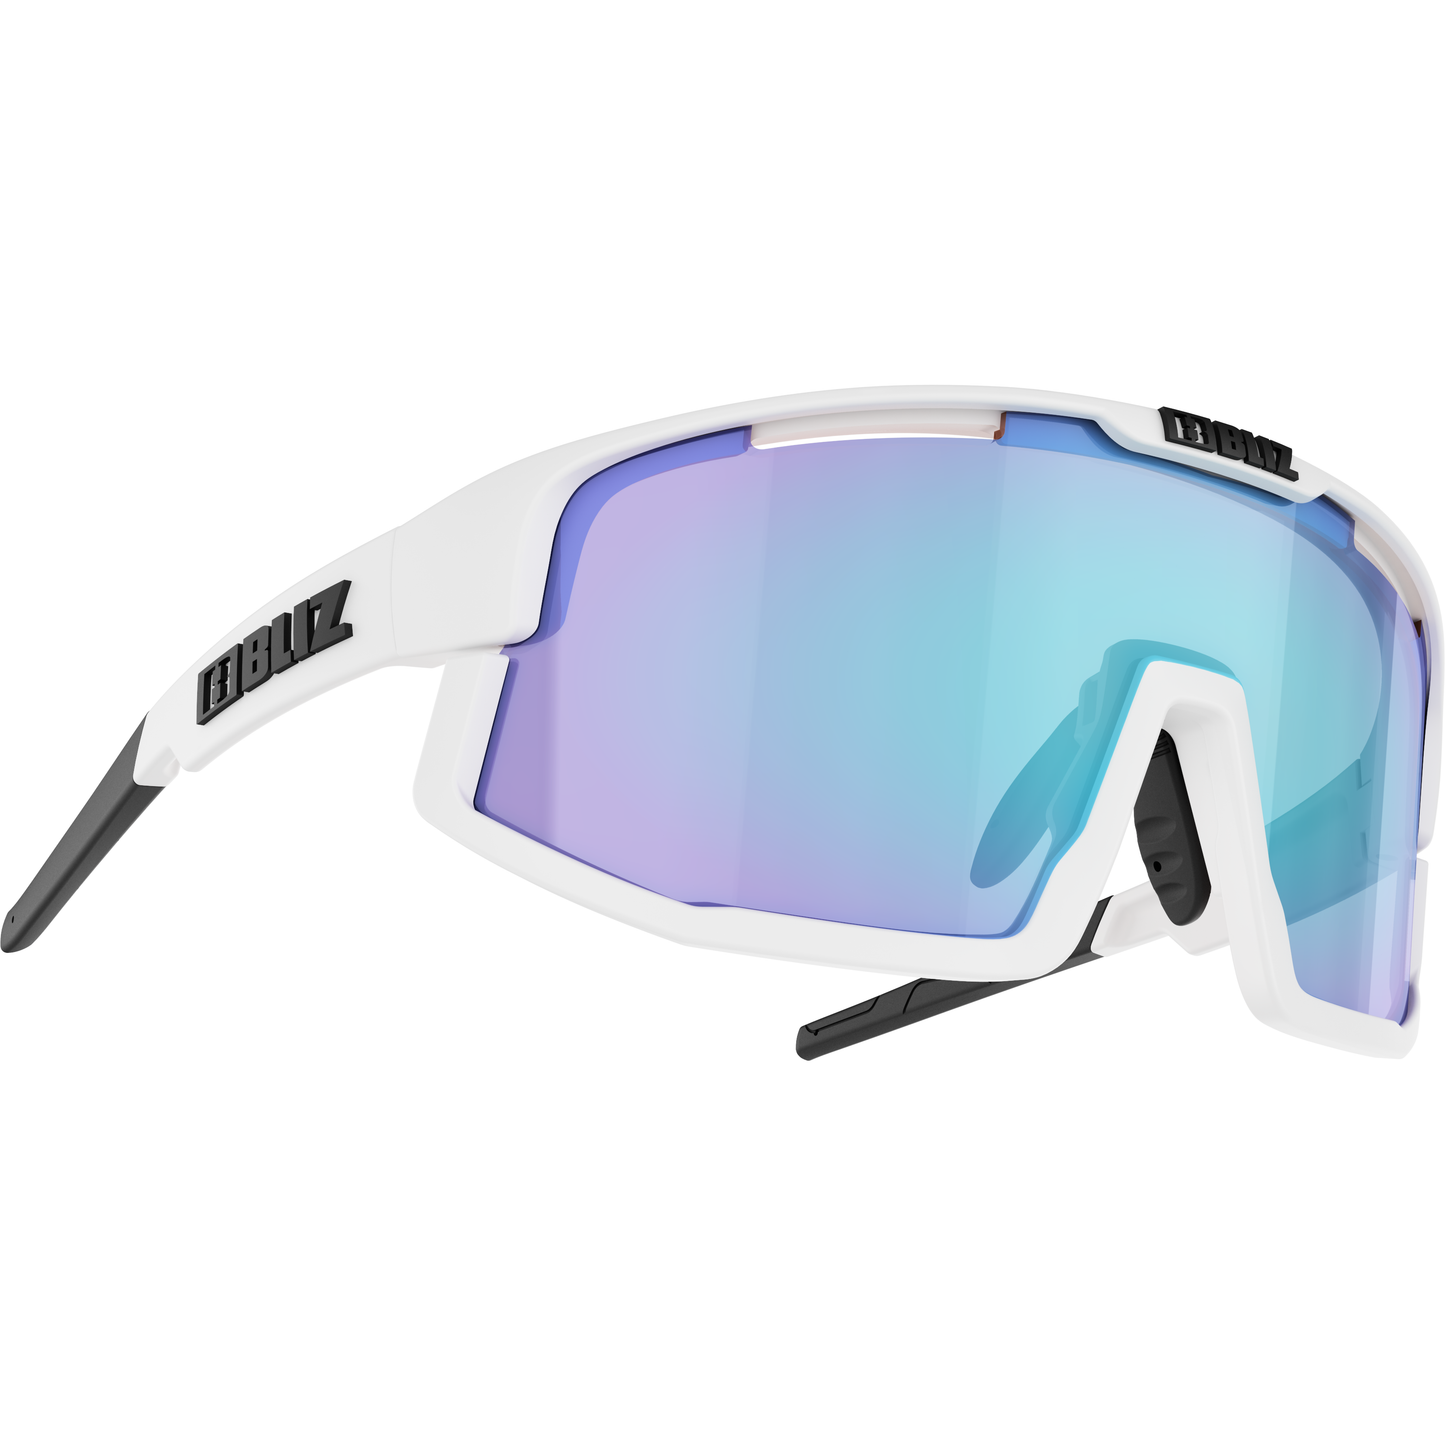 BLIZ Sunglasses One Size Vision, Matt White / Smoke with Blue